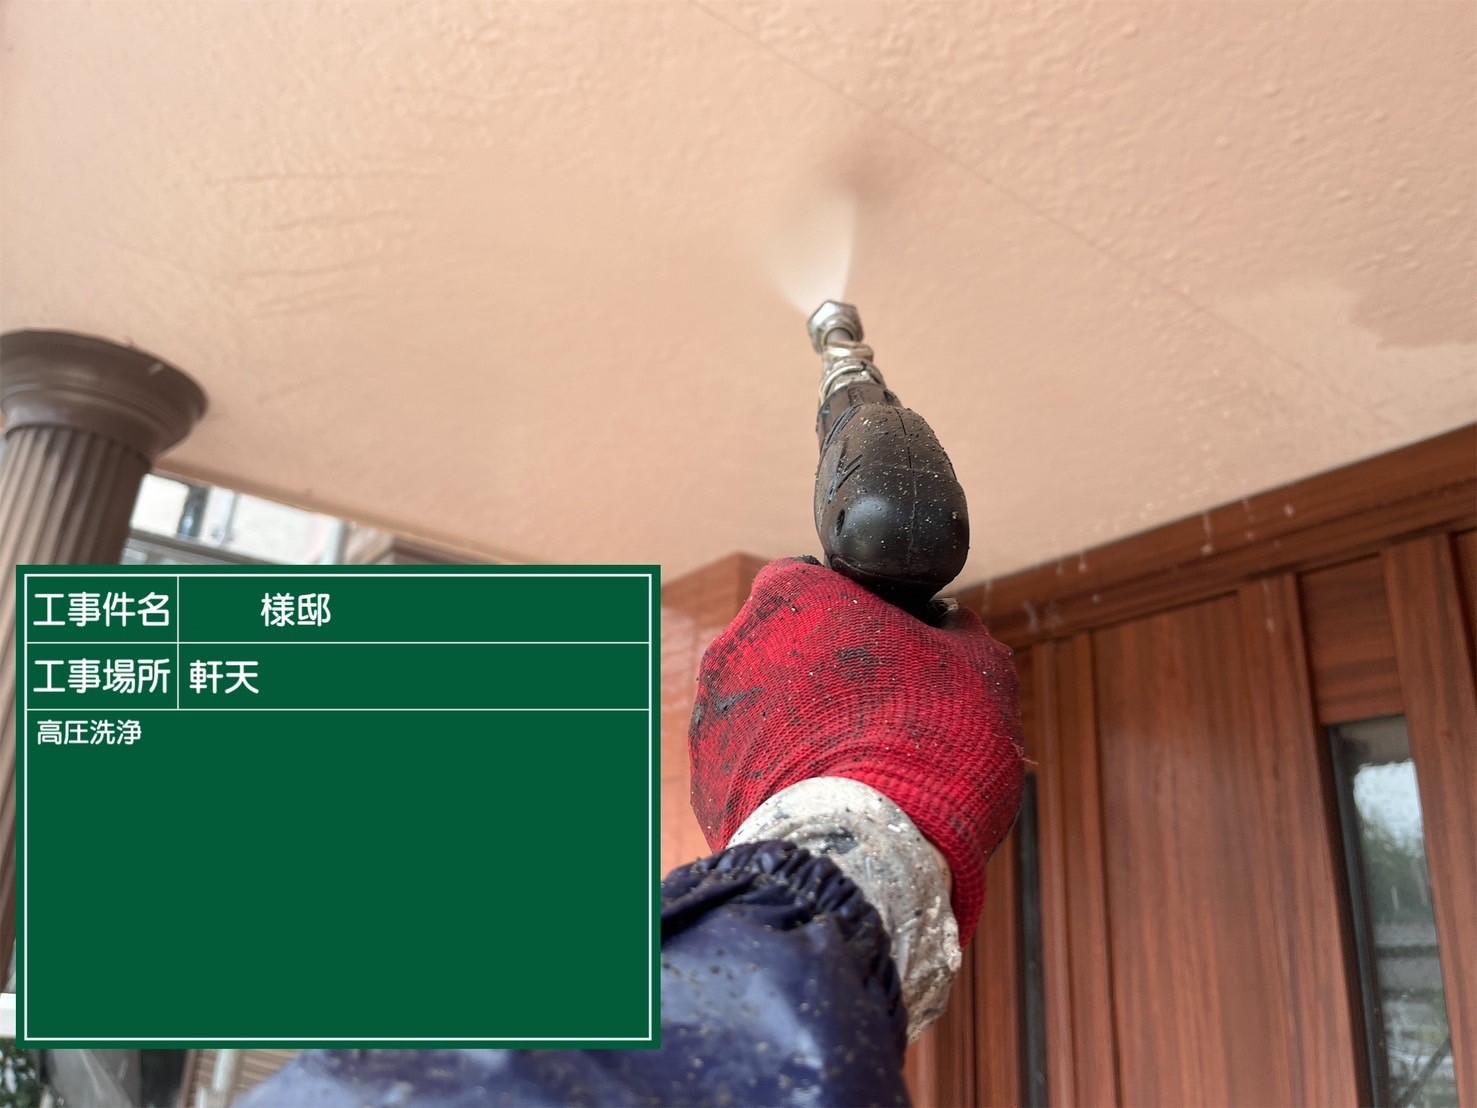 佐賀県三養基郡基山町けやき台のO様邸で超高耐久のプレマテックス社のタテイルαを使用した外壁塗装と屋根カバーのシーガードでの改修工事を行っています。5/14着工です。【HPより】